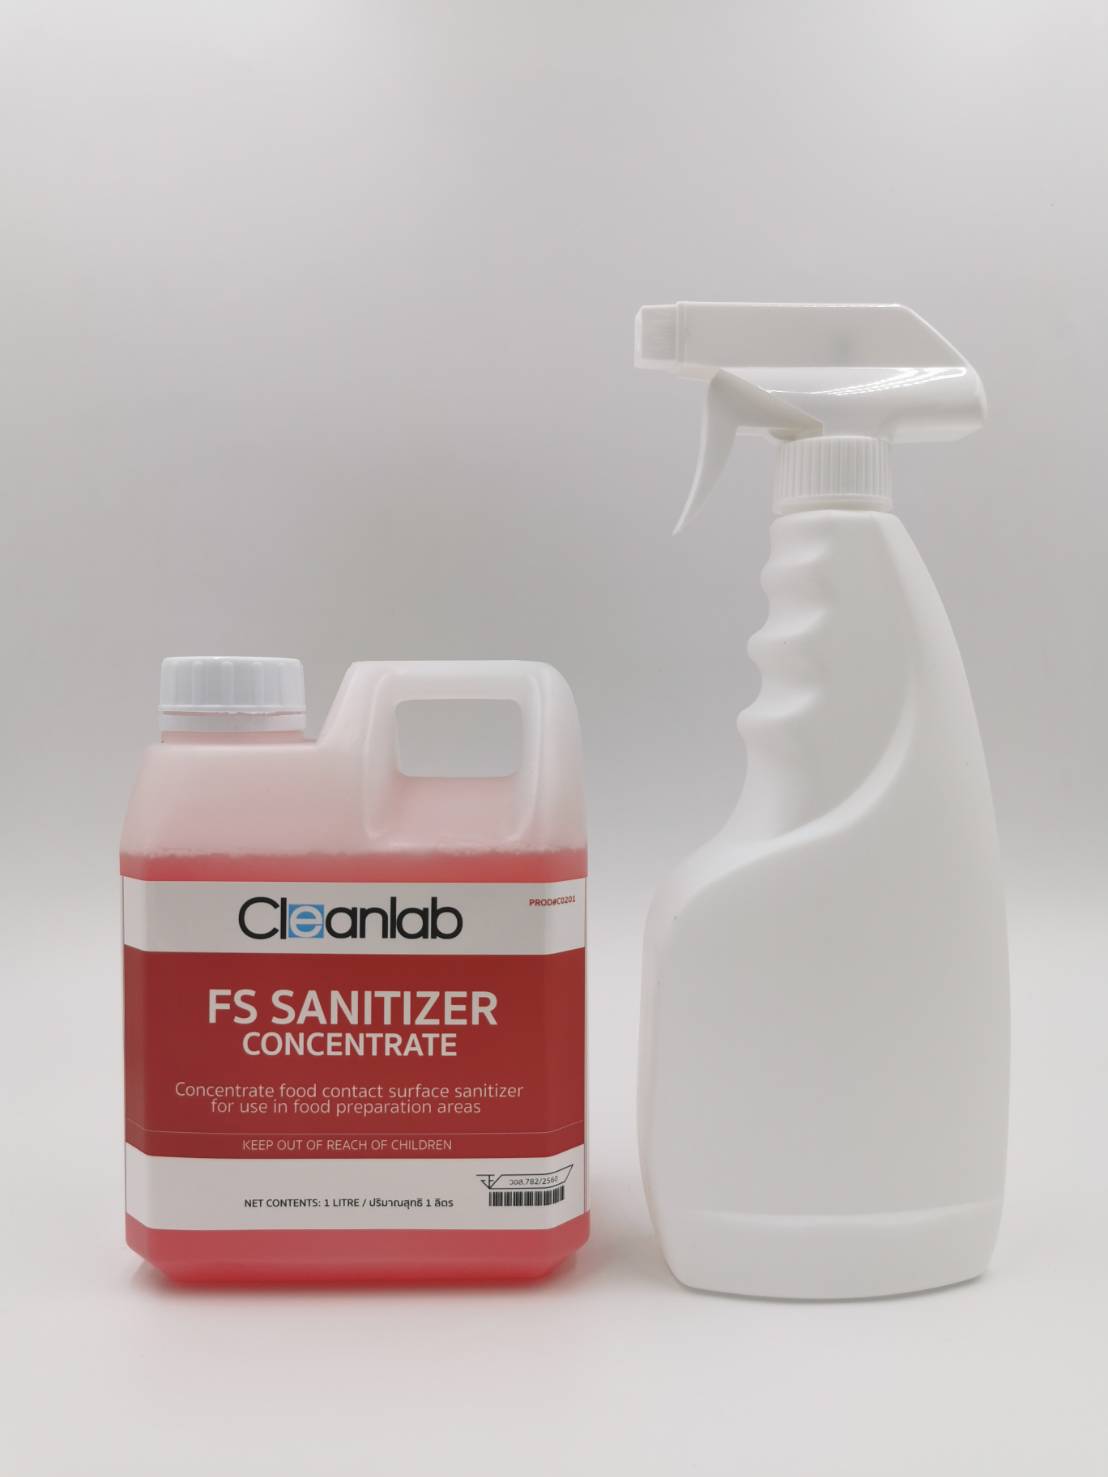 แถมฟรี! ฟ็อกกี้สำหรับฉีด Cleanlab FS Sanitizer Concentrate ฟู๊ดเซฟตี้ สูตรเข้มข้นมาก